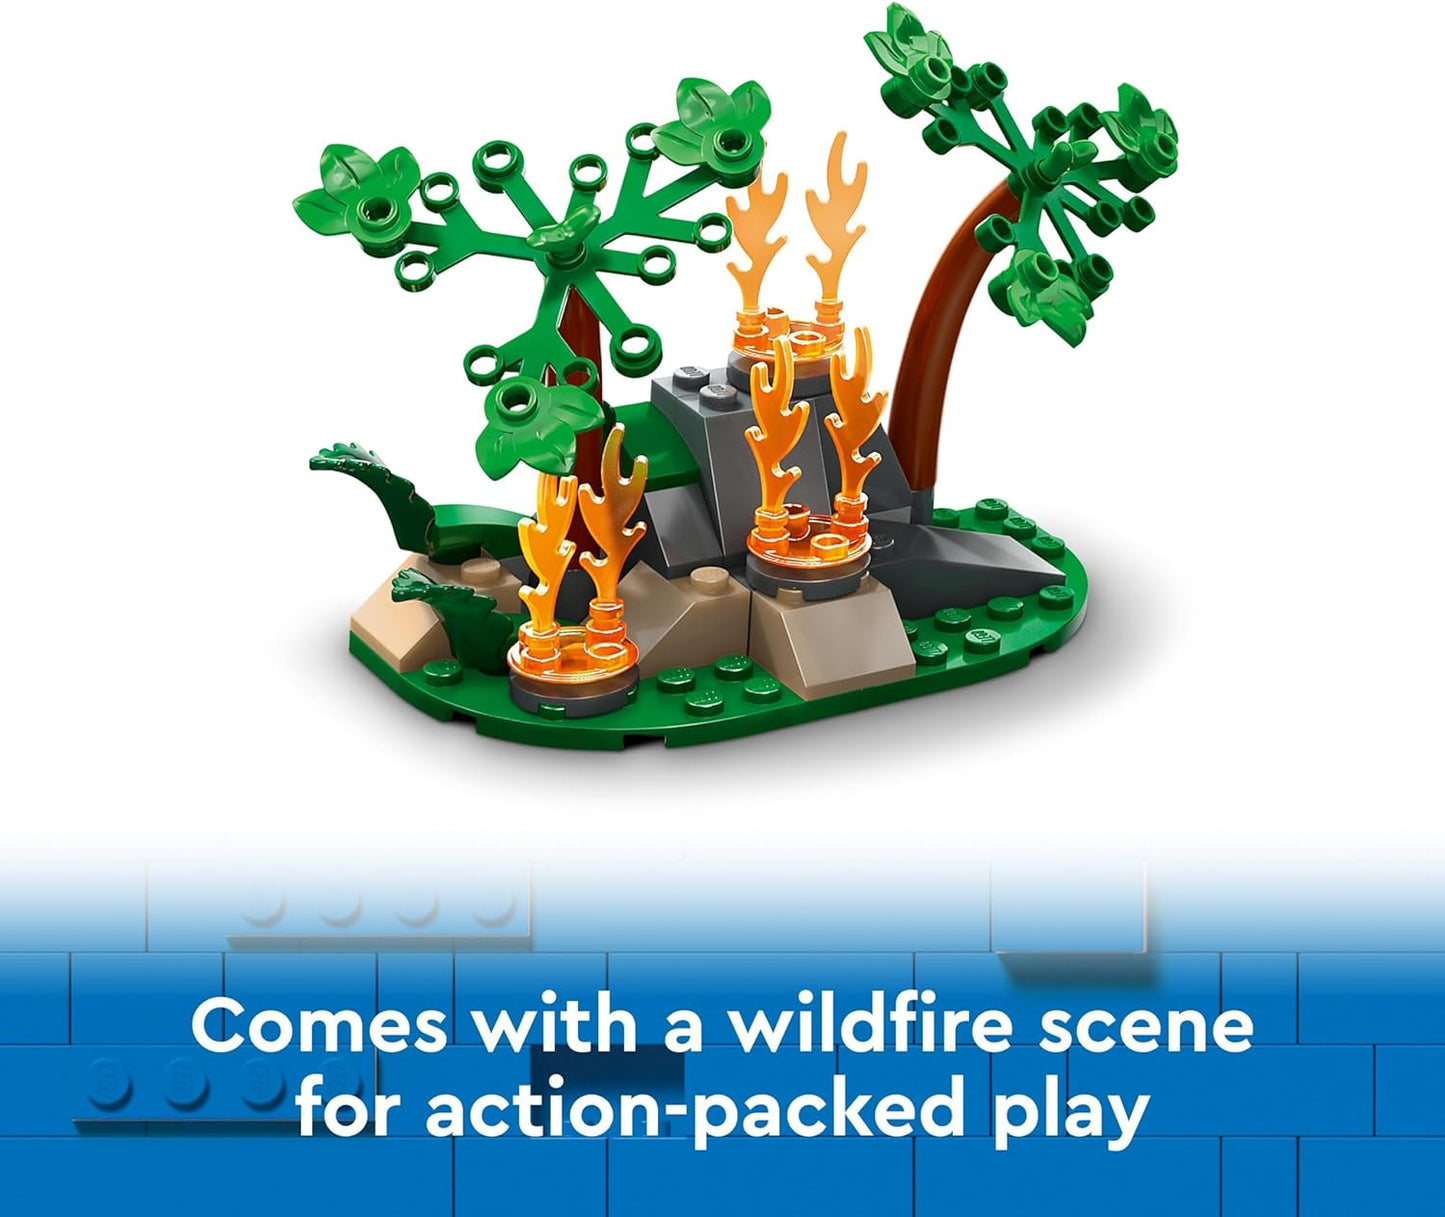 LEGO Brinquedo de avião de resgate de incêndio urbano para meninos, meninas e crianças de 6 anos ou mais que amam brincadeiras imaginativas, conjunto de brinquedos para veículos de emergência de avião inclui 3 minifiguras, ideia de presente de